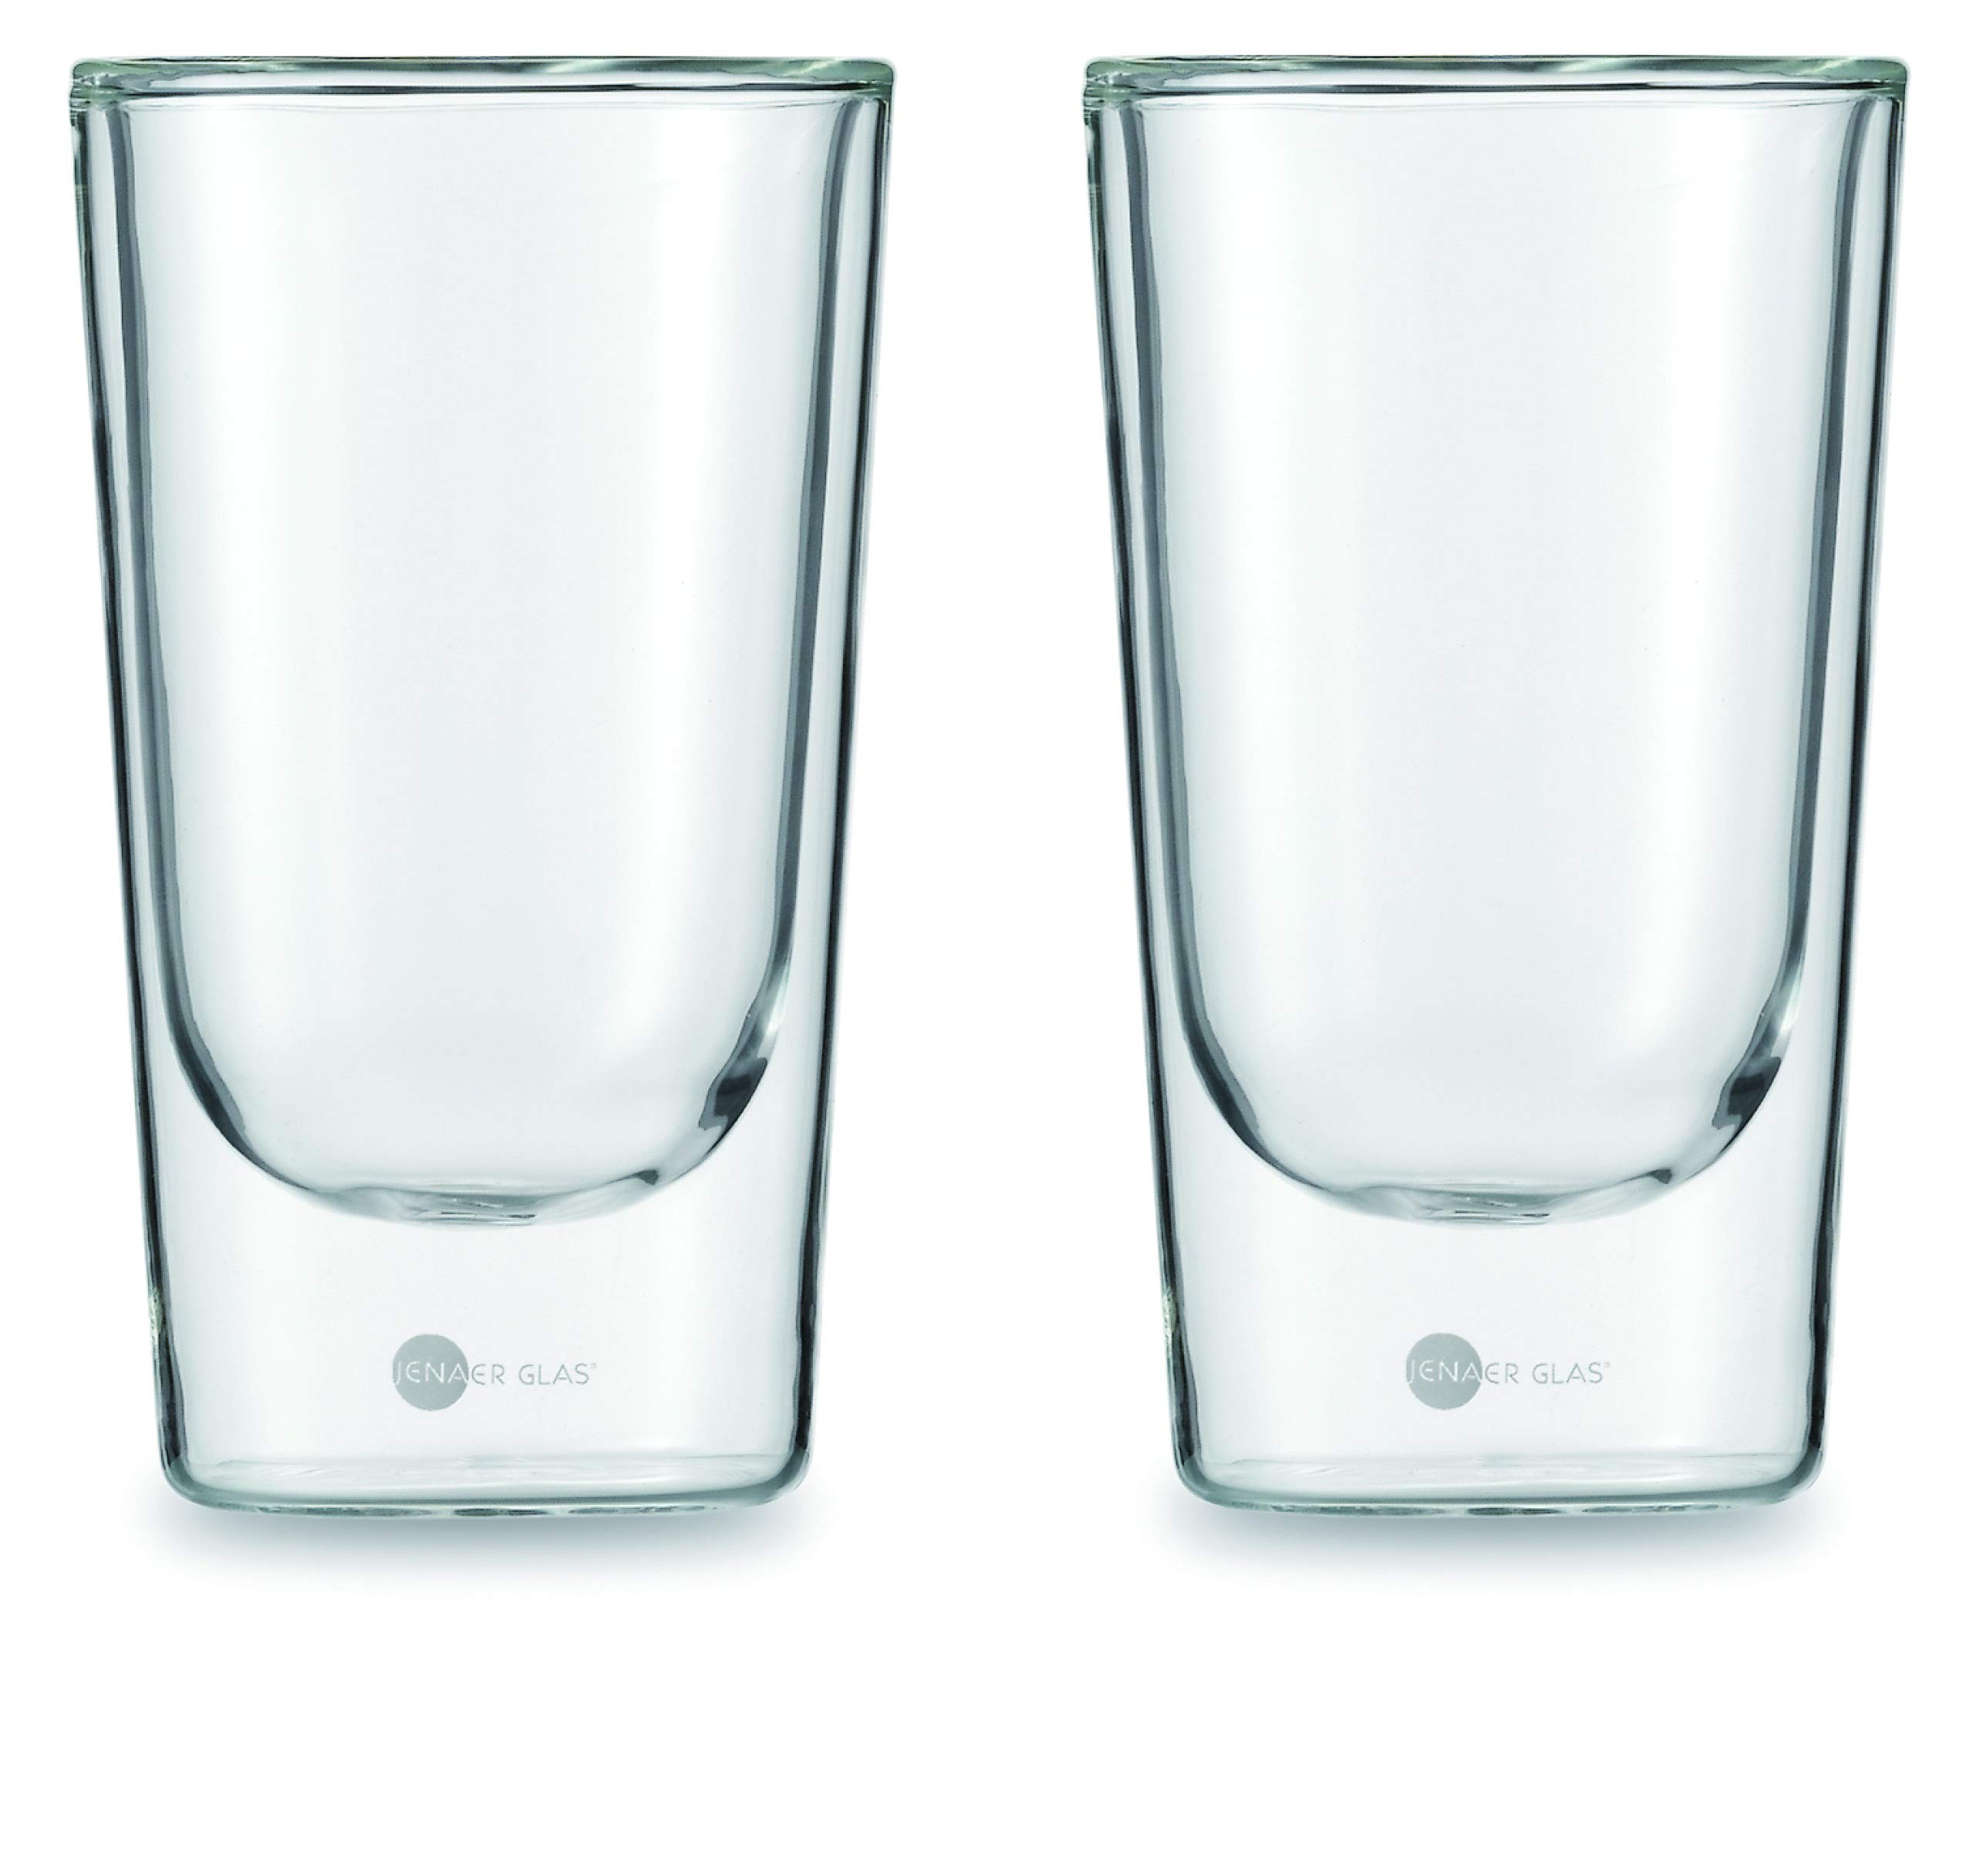 Jenaer Glas 115903 Becher, transparent, 2 Einheiten